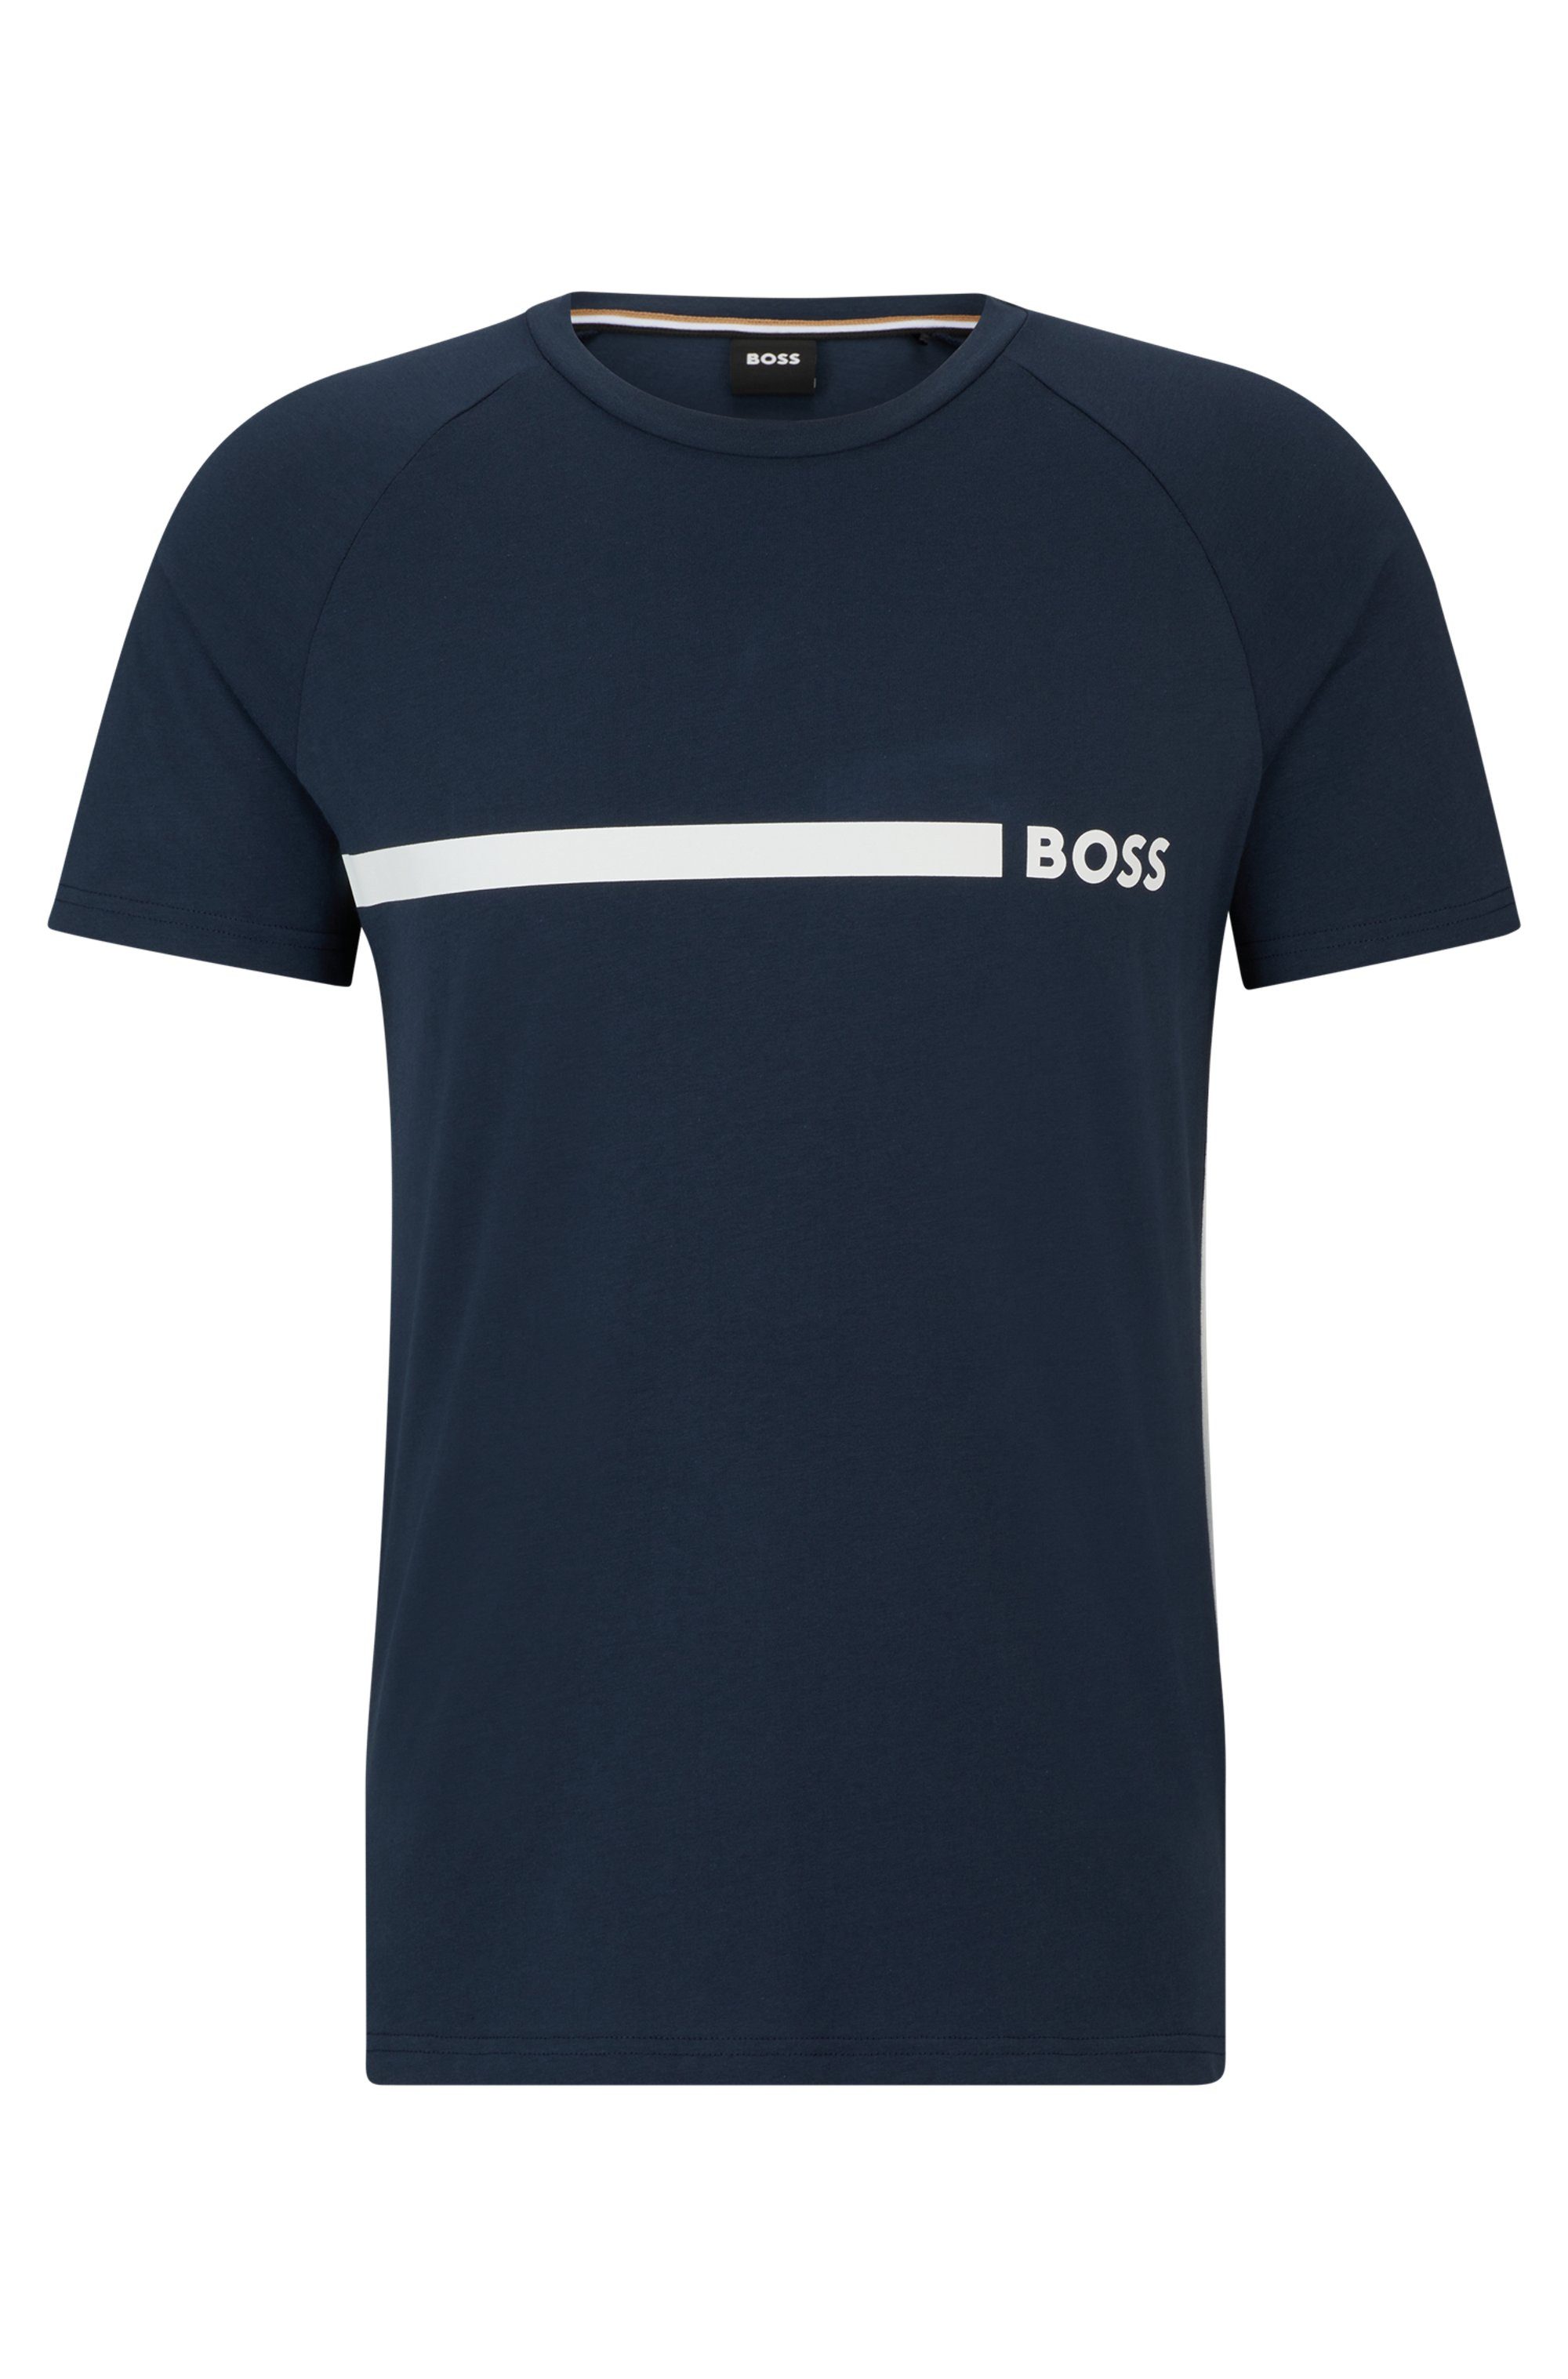 BOSS T-Shirt T-Shirt RN Slim Fit mit BOSS Logoschriftzug, Rundhals